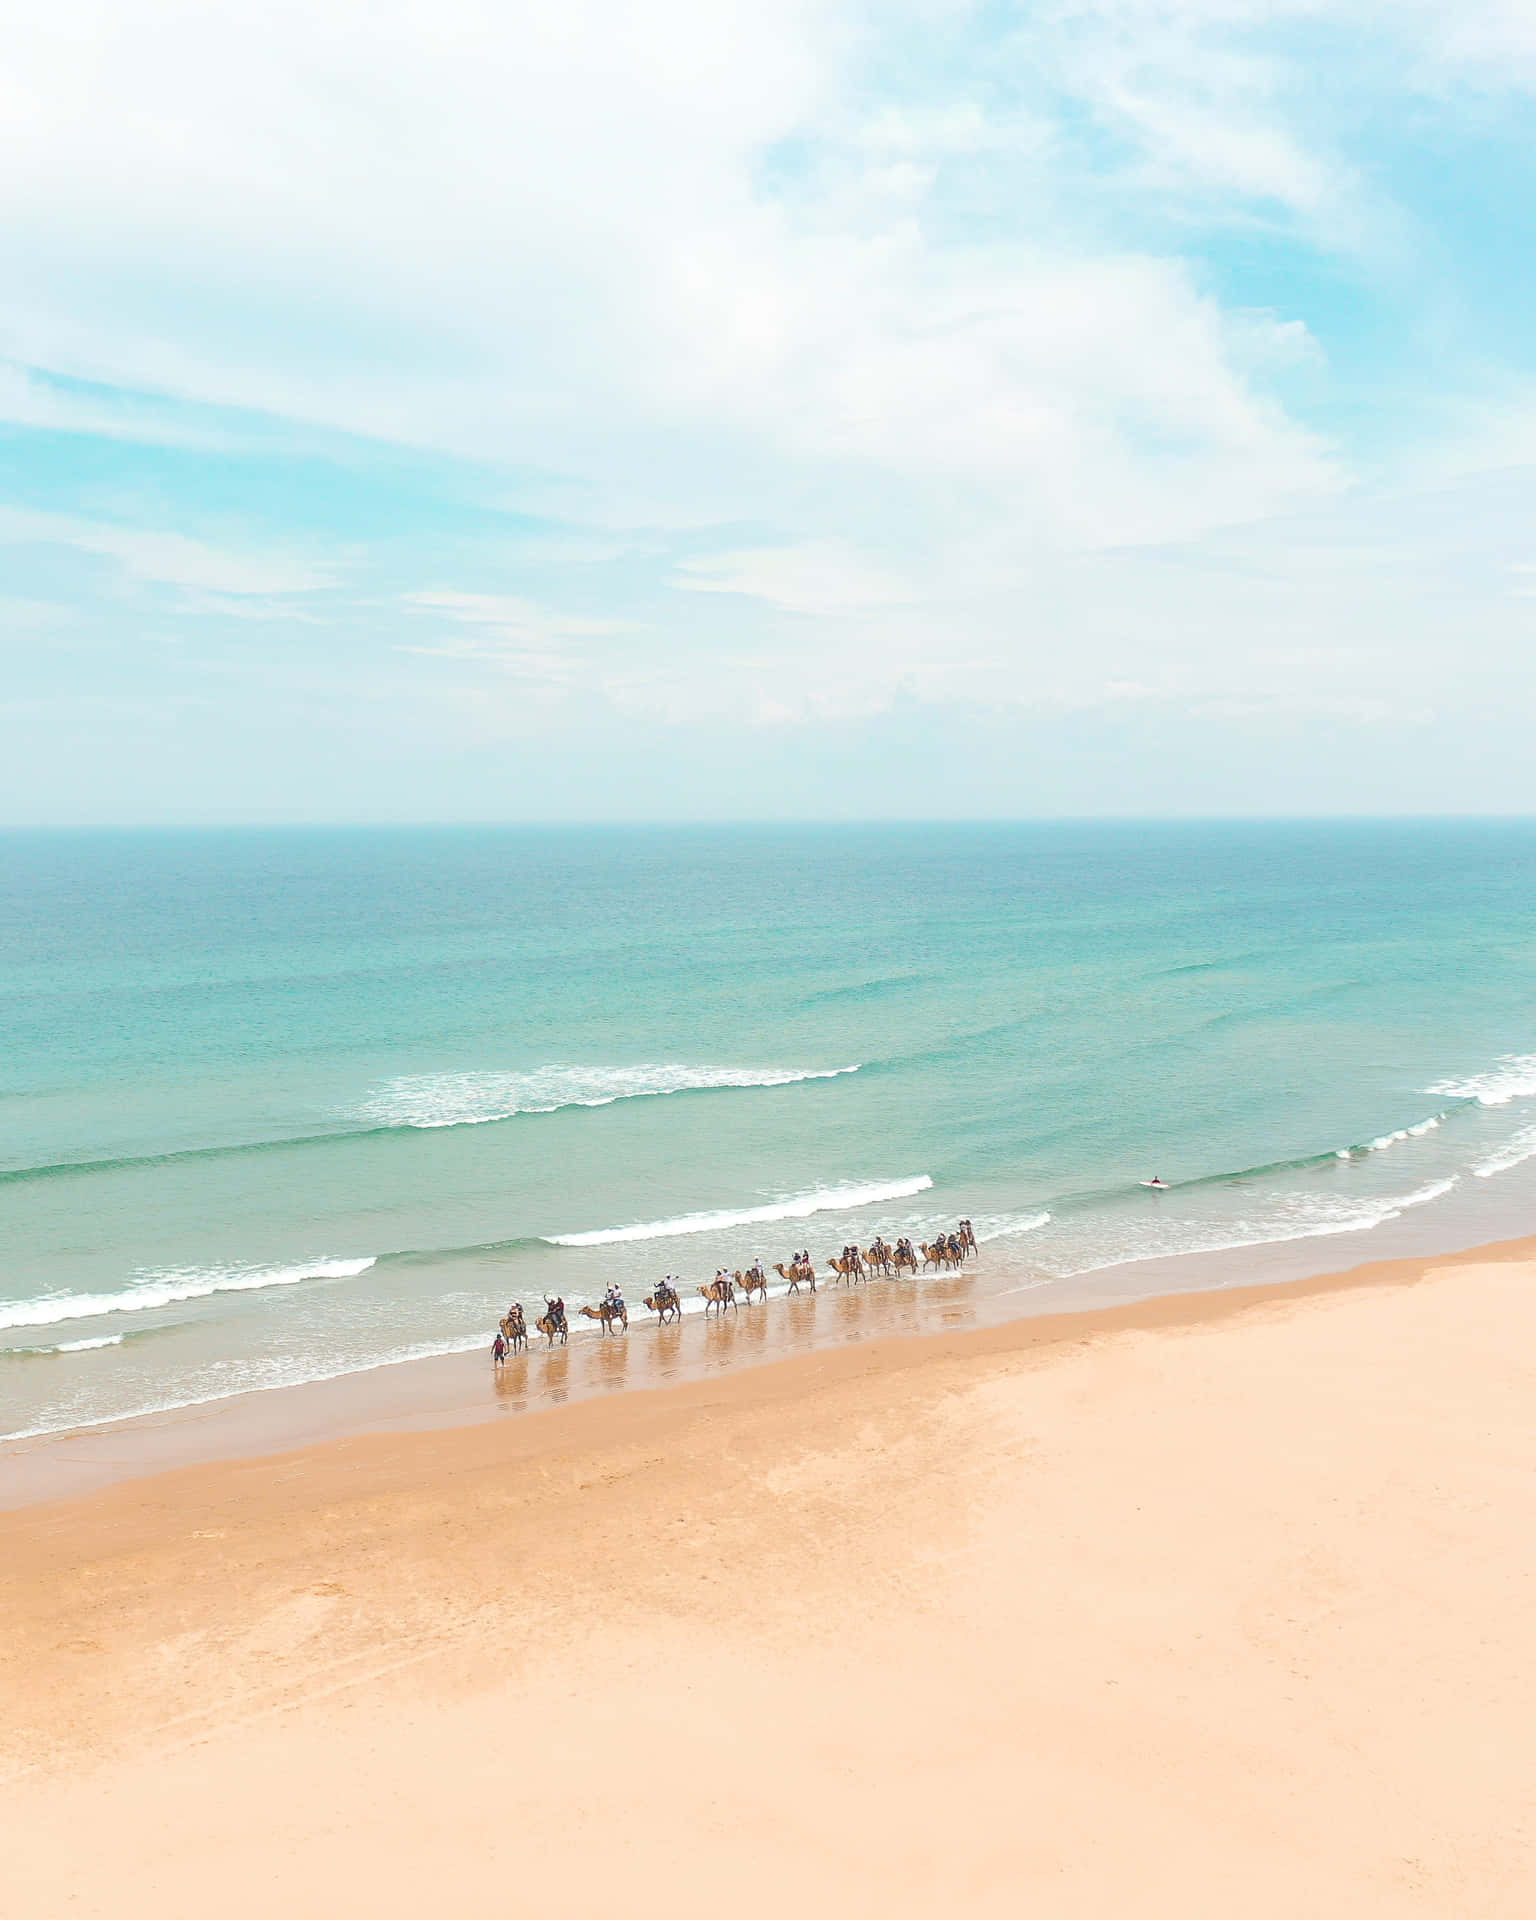 En spektakulær strandoase klar til at inspirere din næste rejse.